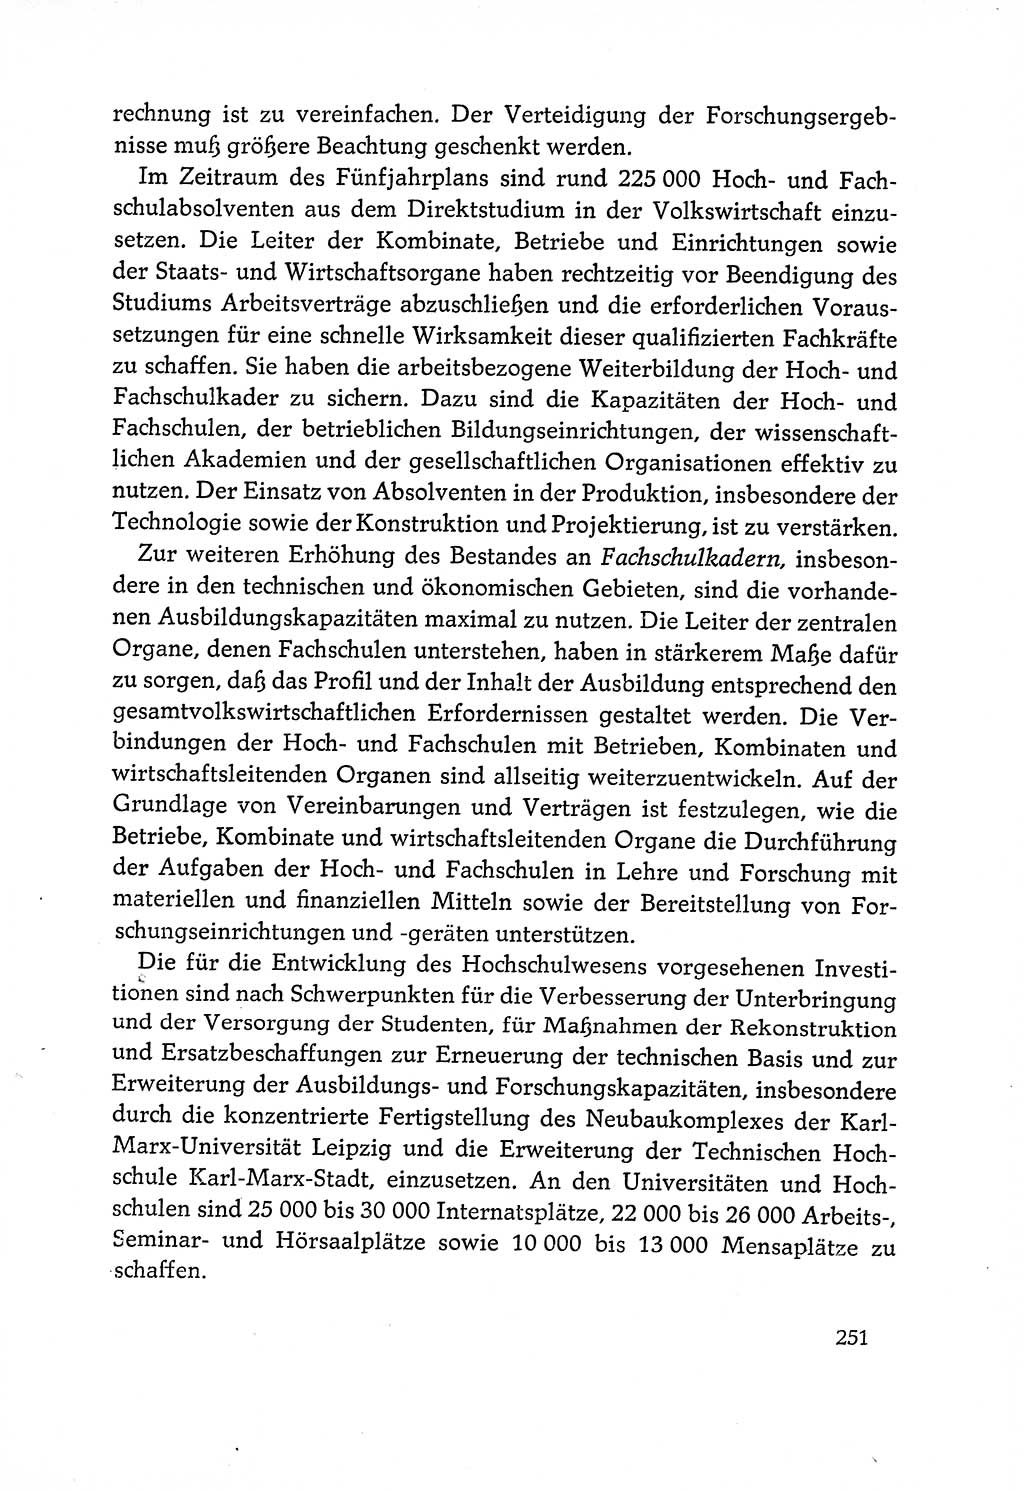 Dokumente der Sozialistischen Einheitspartei Deutschlands (SED) [Deutsche Demokratische Republik (DDR)] 1970-1971, Seite 251 (Dok. SED DDR 1970-1971, S. 251)